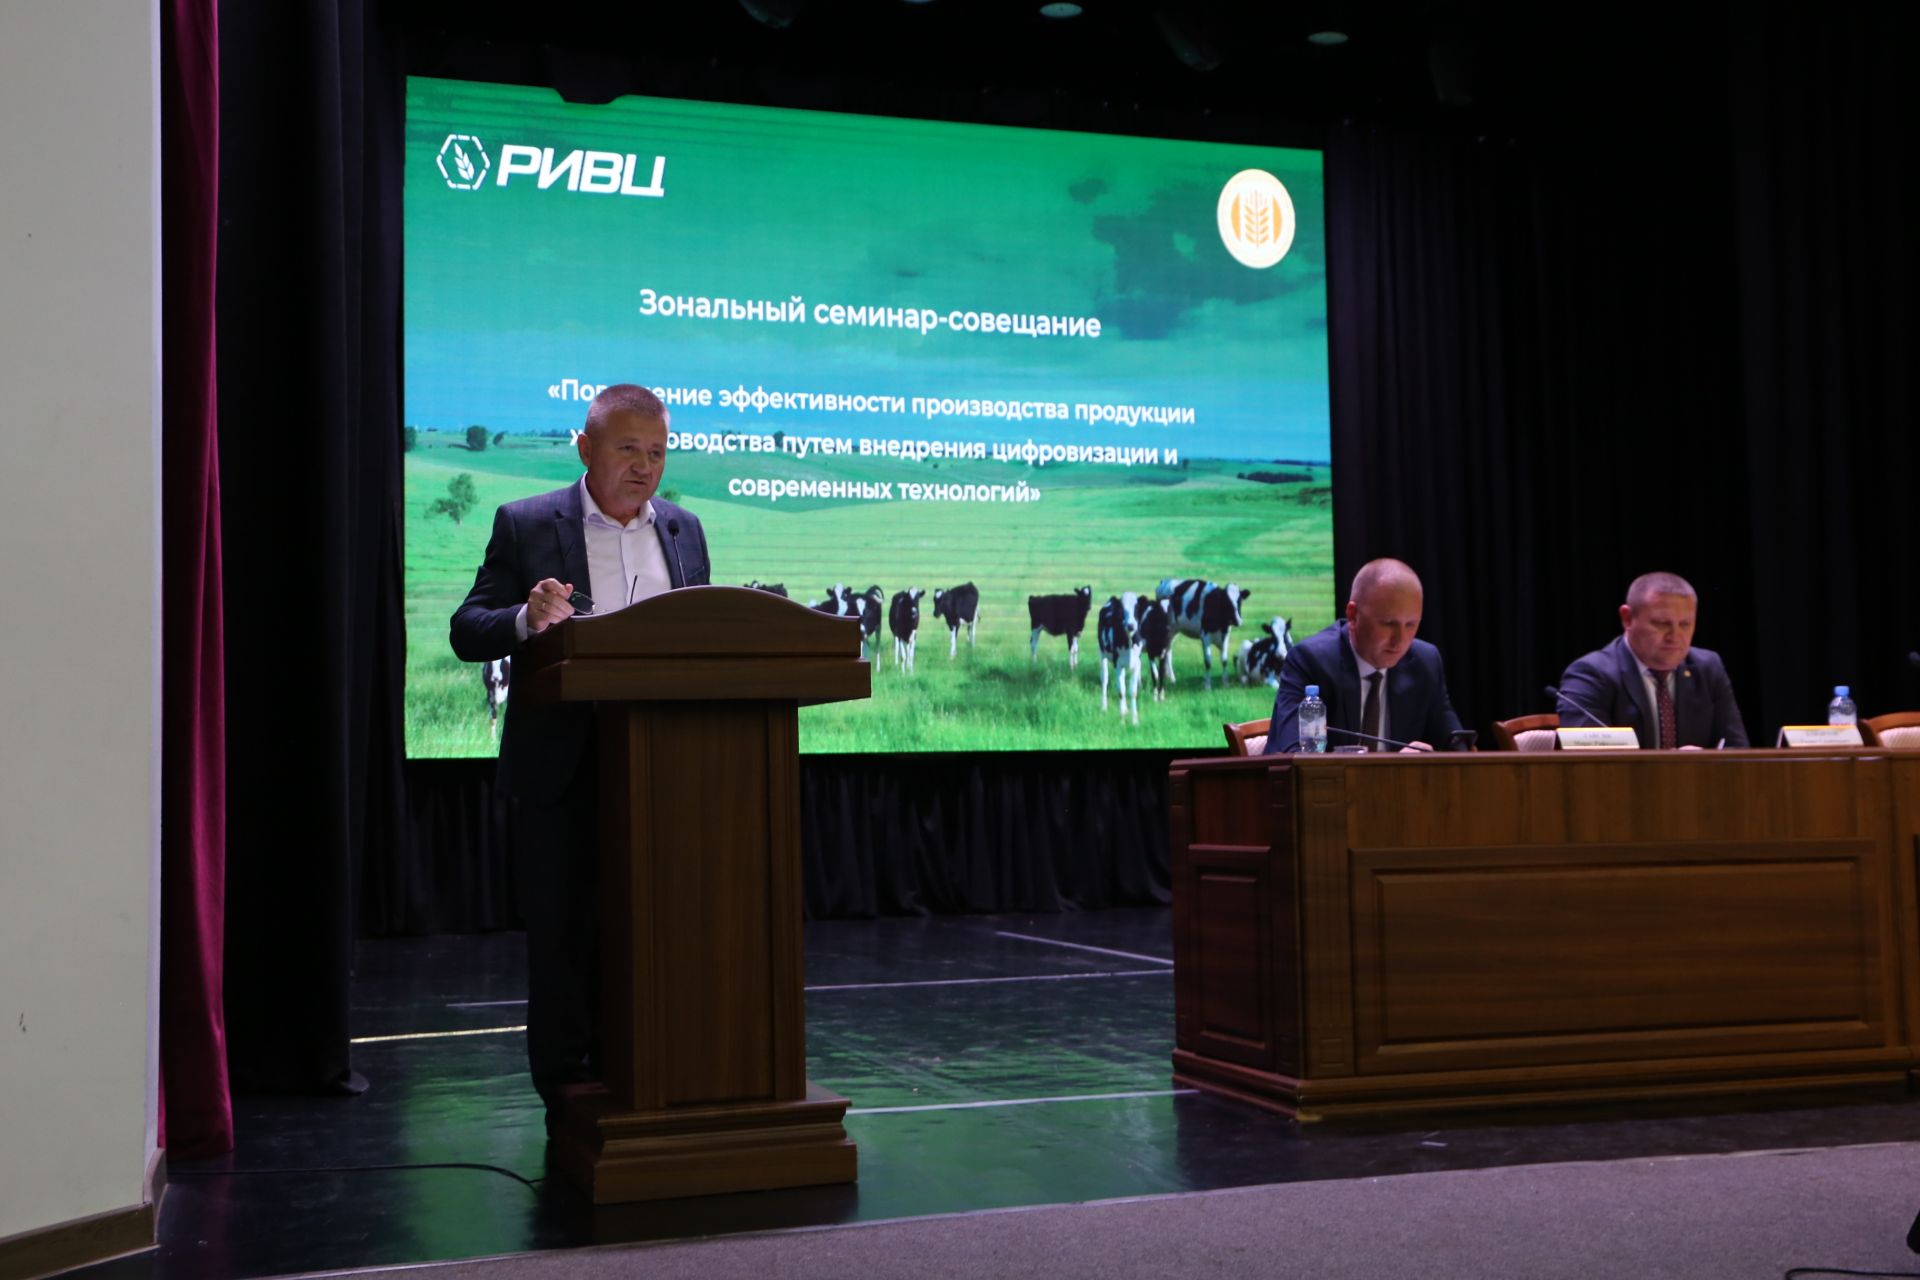 Животноводы Закамья в Алексеевском обсудили вопросы повышения производства и сохранения стада